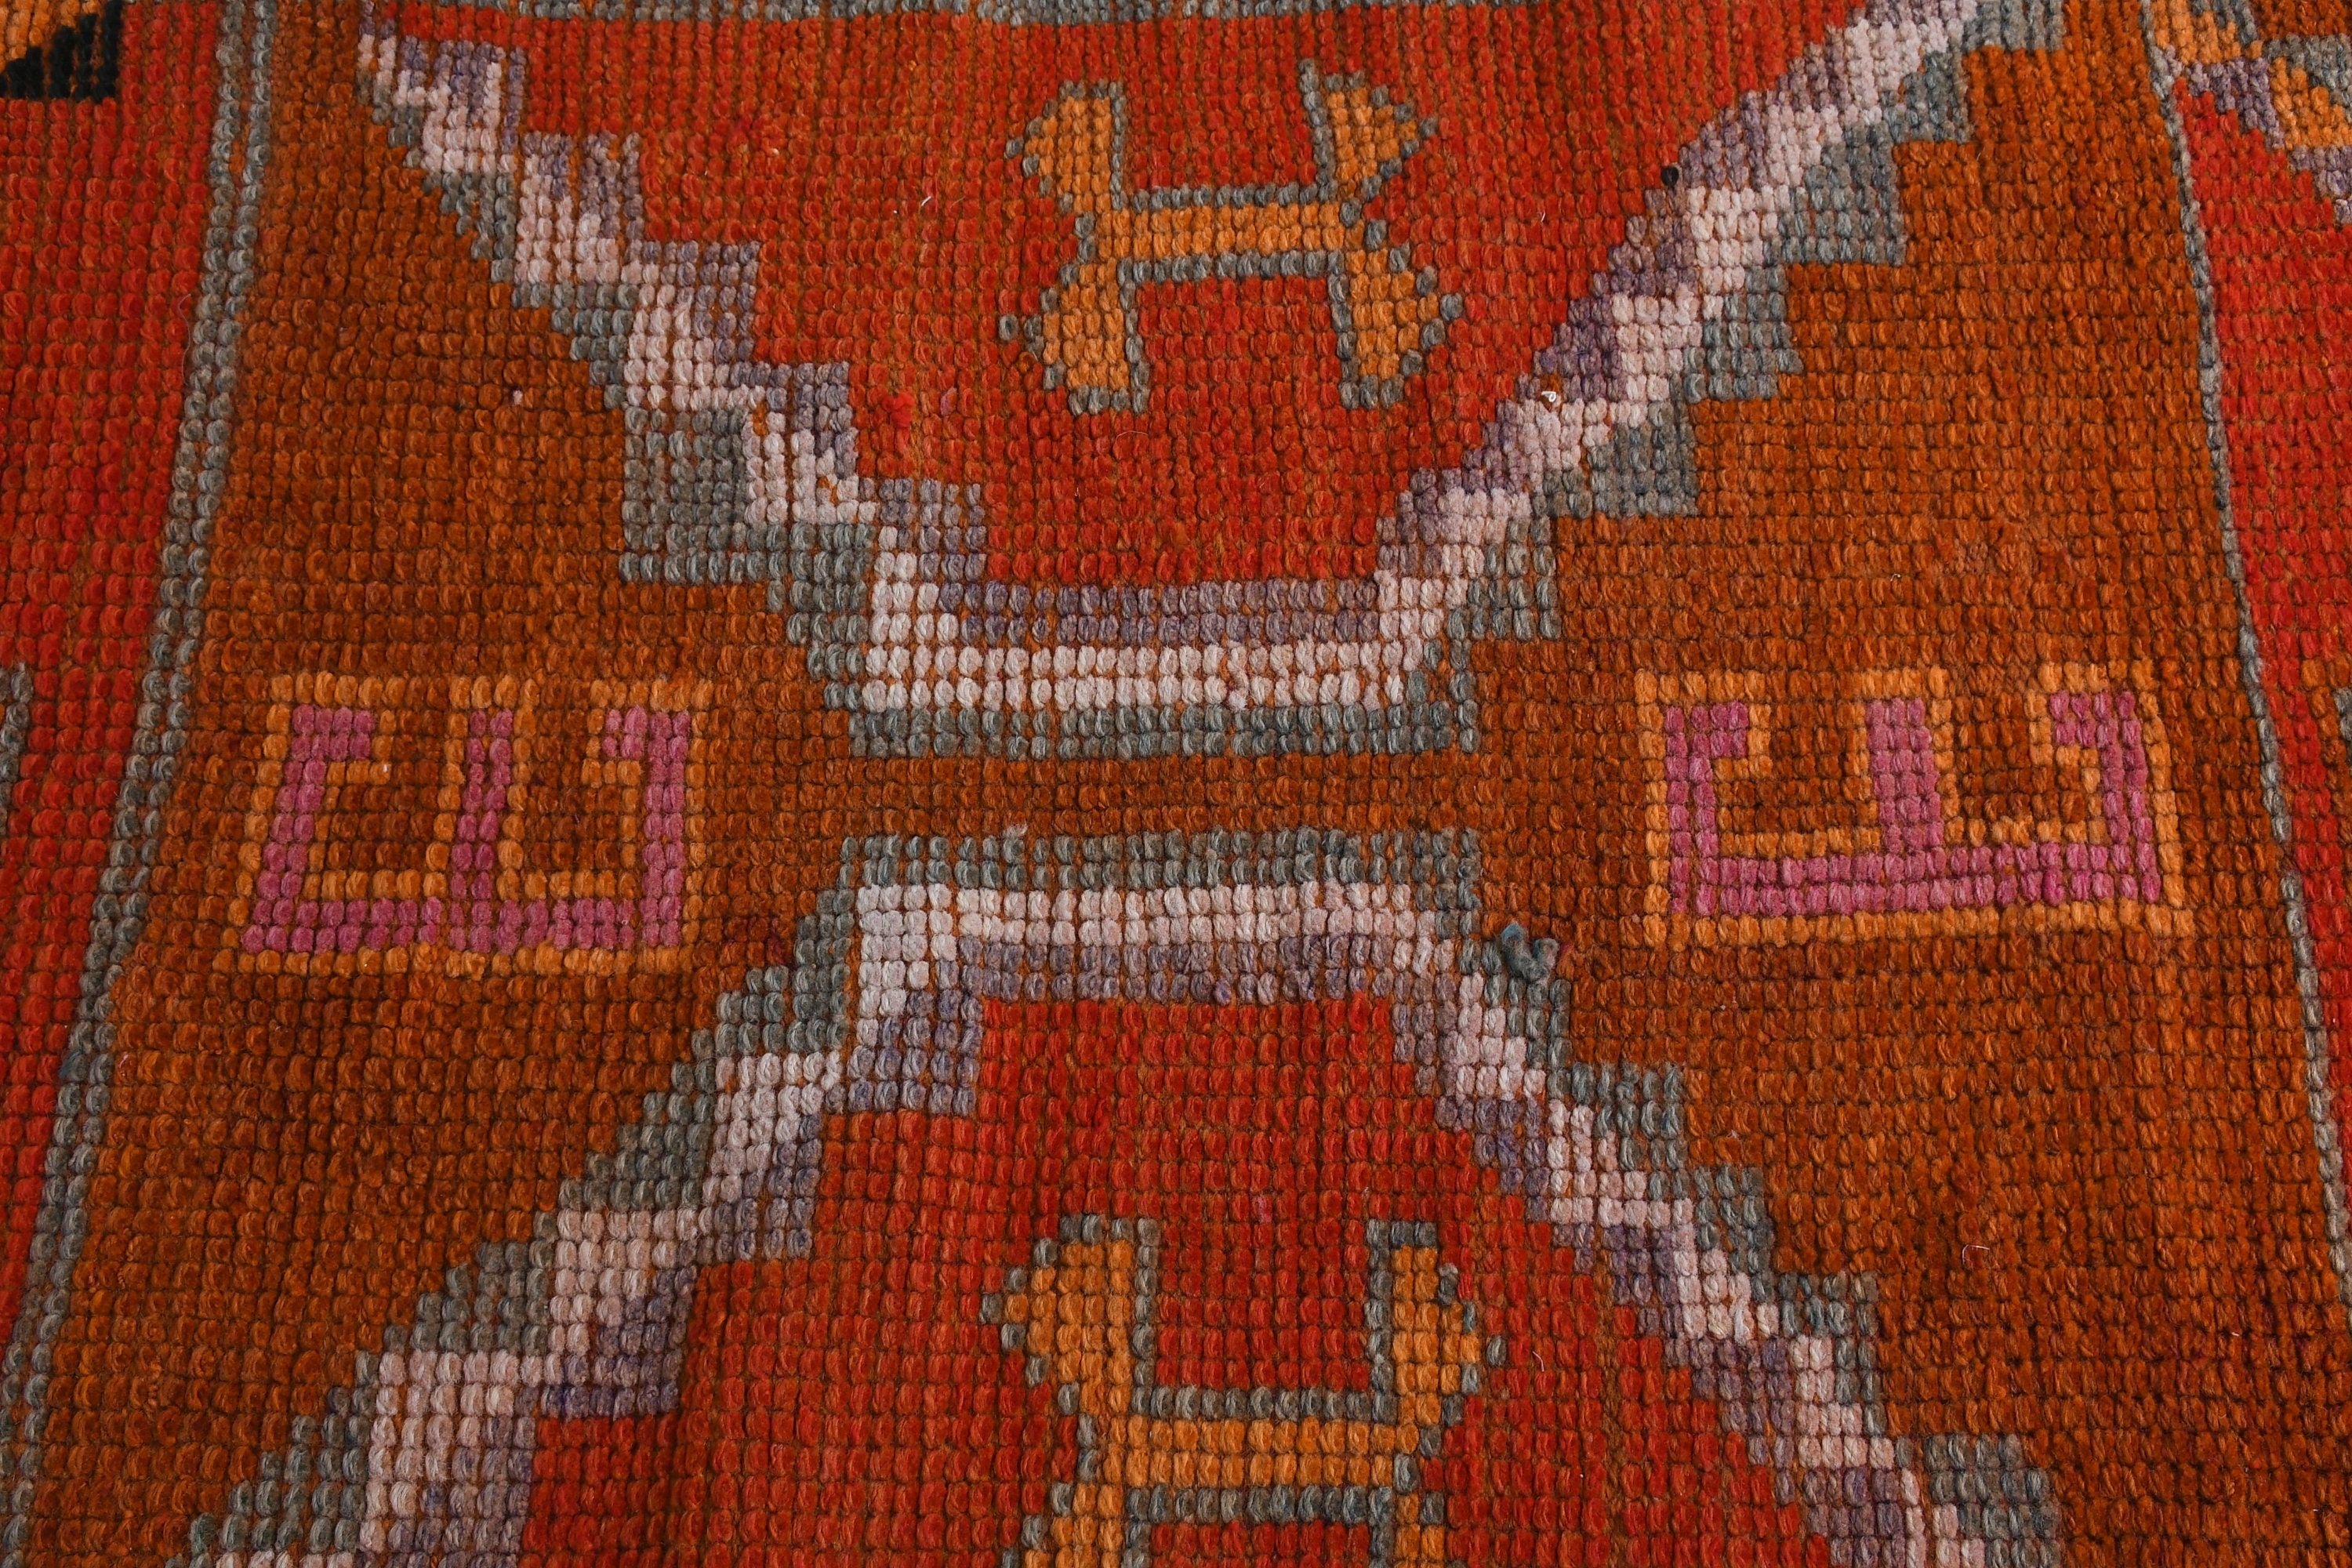 Antique Rug, Pale Rug, Vintage Rug, 2.8x10.1 ft Runner Rug, Orange Kitchen Rug, Turkish Rug, Corridor Rugs, Oushak Rug, Rugs for Corridor